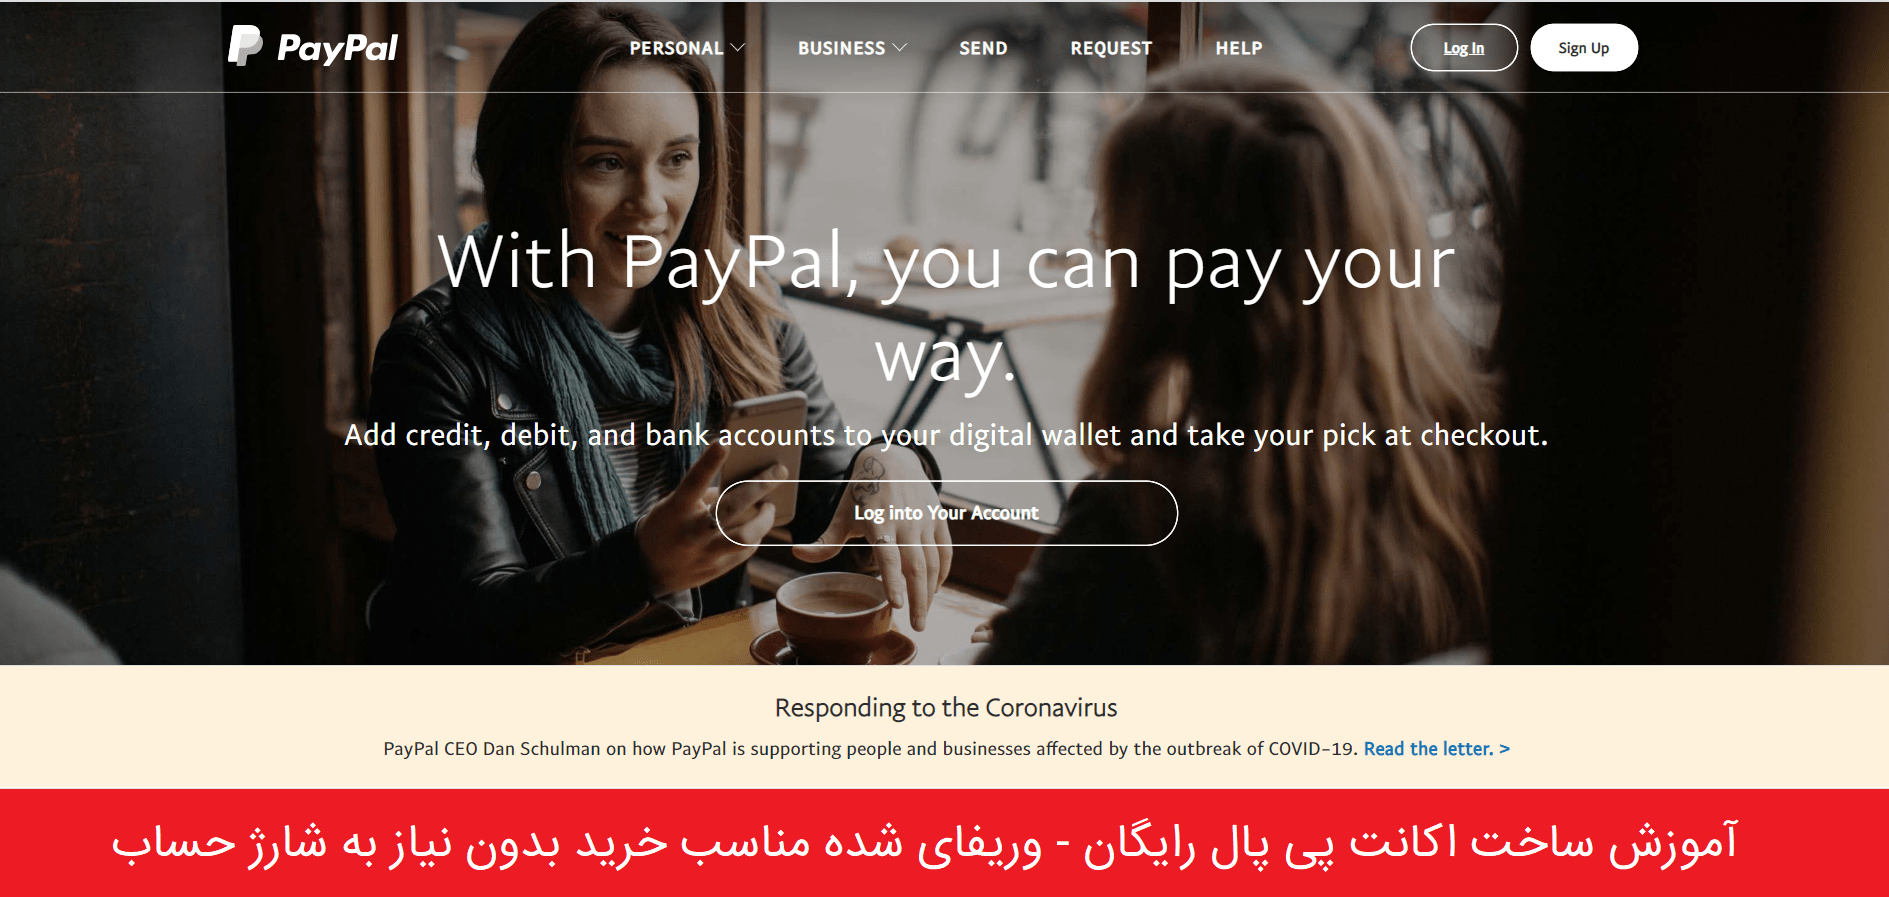 آموزش ساخت اکانت پی پال رایگان - PayPal وریفای شده مناسب خرید بدون نیاز به شارژ حساب